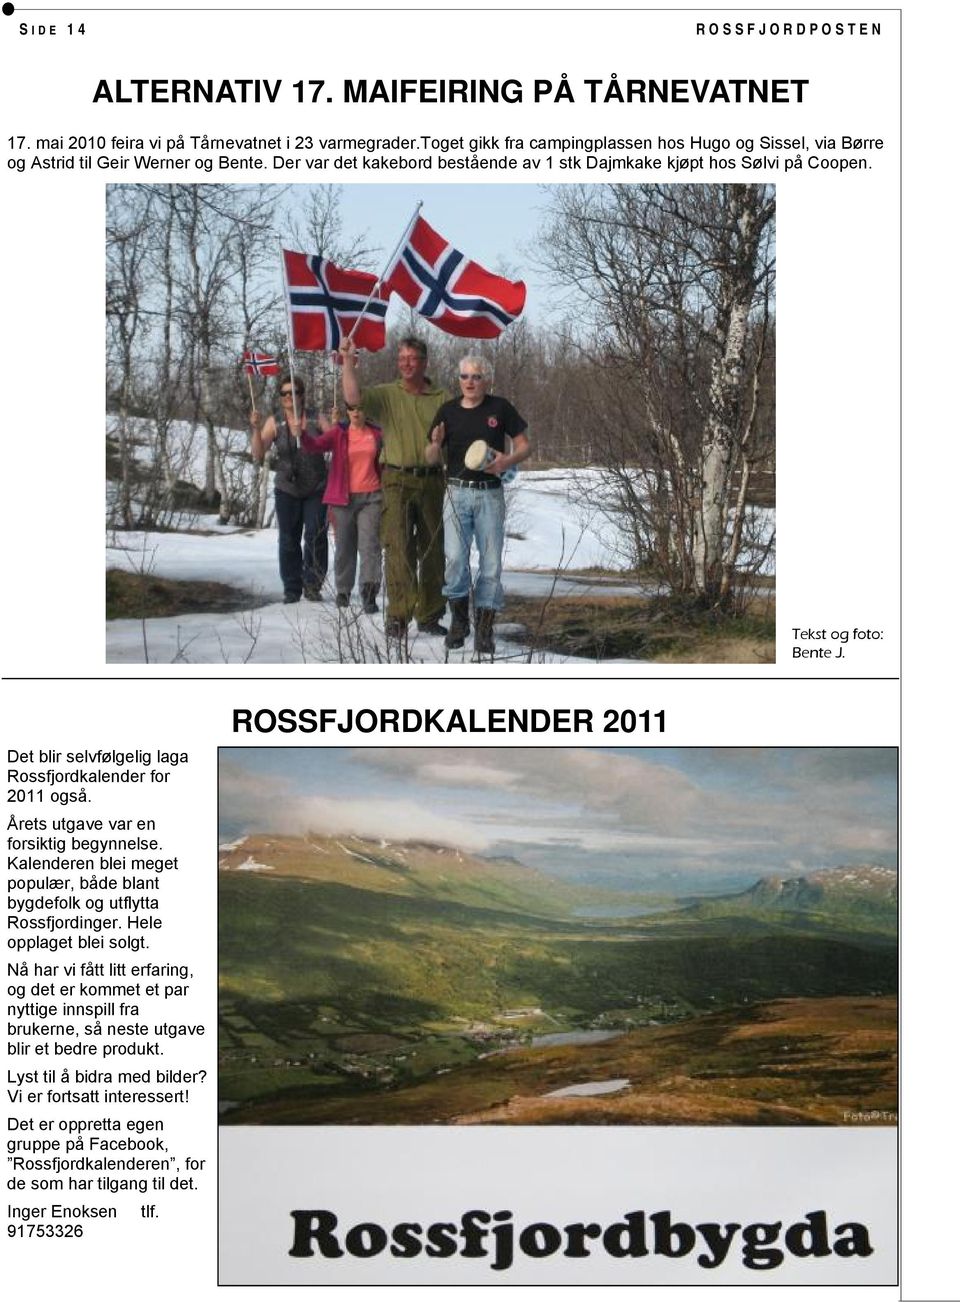 Årets utgave var en forsiktig begynnelse. Kalenderen blei meget populær, både blant bygdefolk og utflytta Rossfjordinger. Hele opplaget blei solgt.